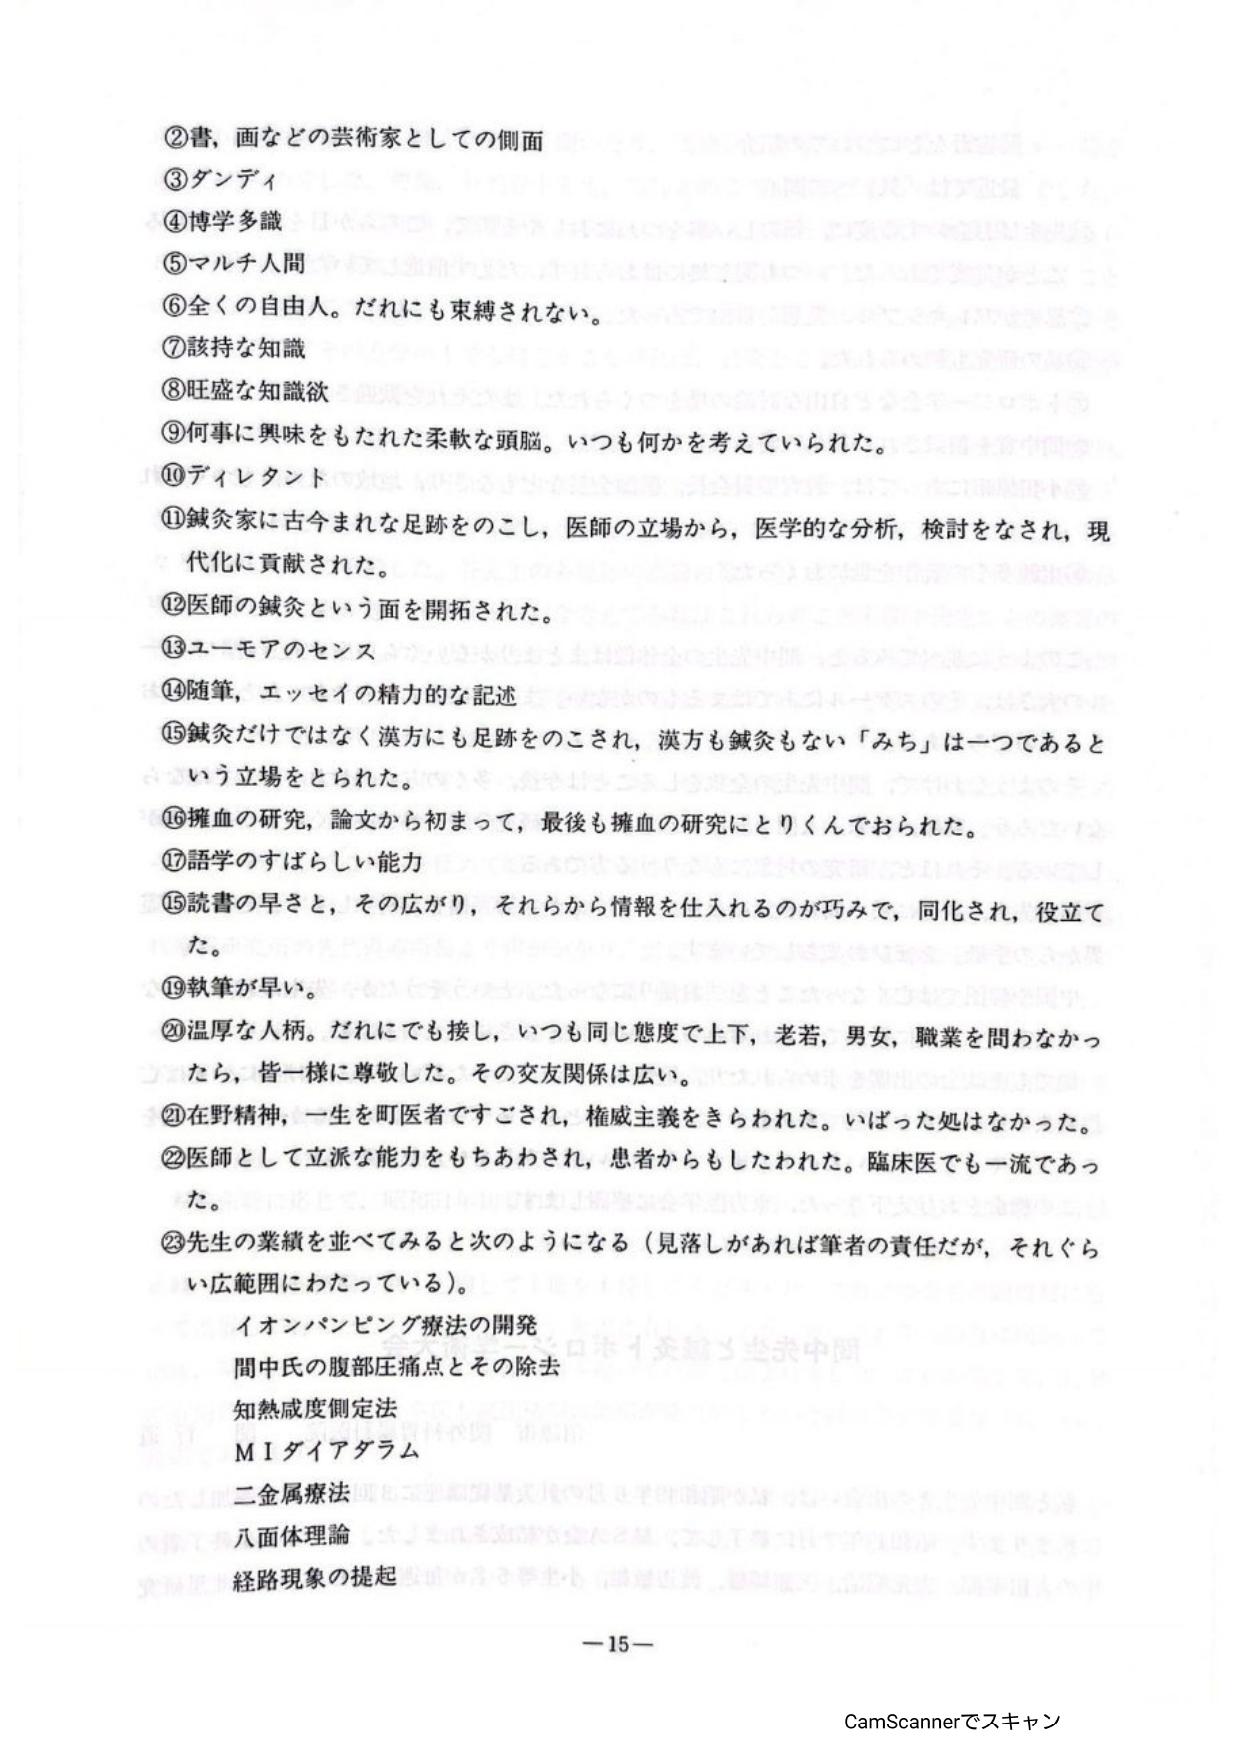 髢謎ｸｭ蜈育函霑ｽ謔ｼ髮page 0017